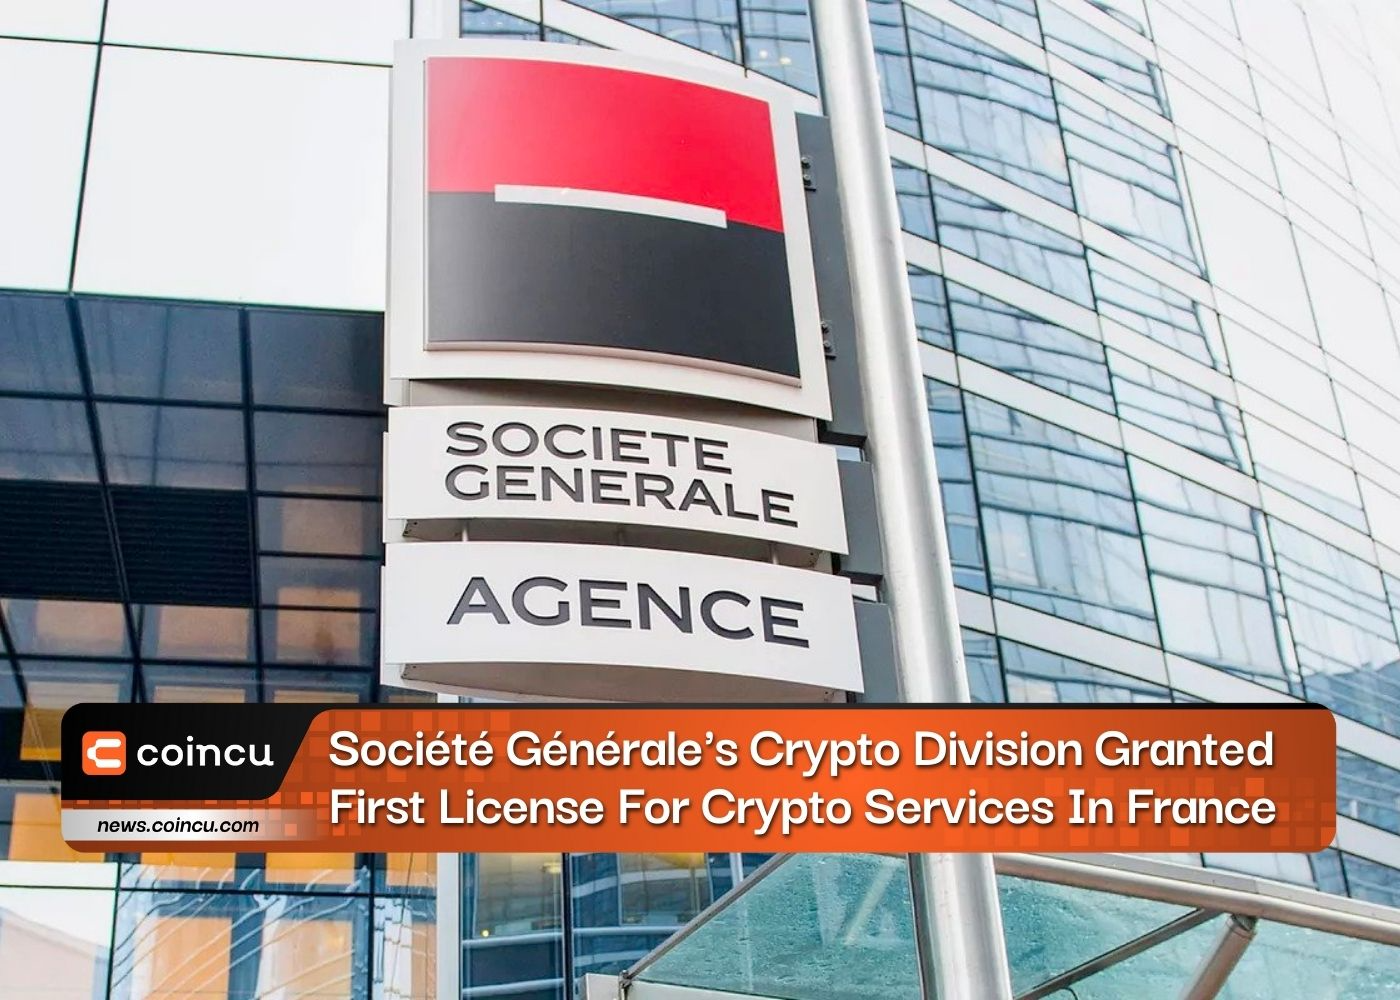 Divisão de criptografia da Société Générale concedeu primeira licença para serviços de criptografia na França